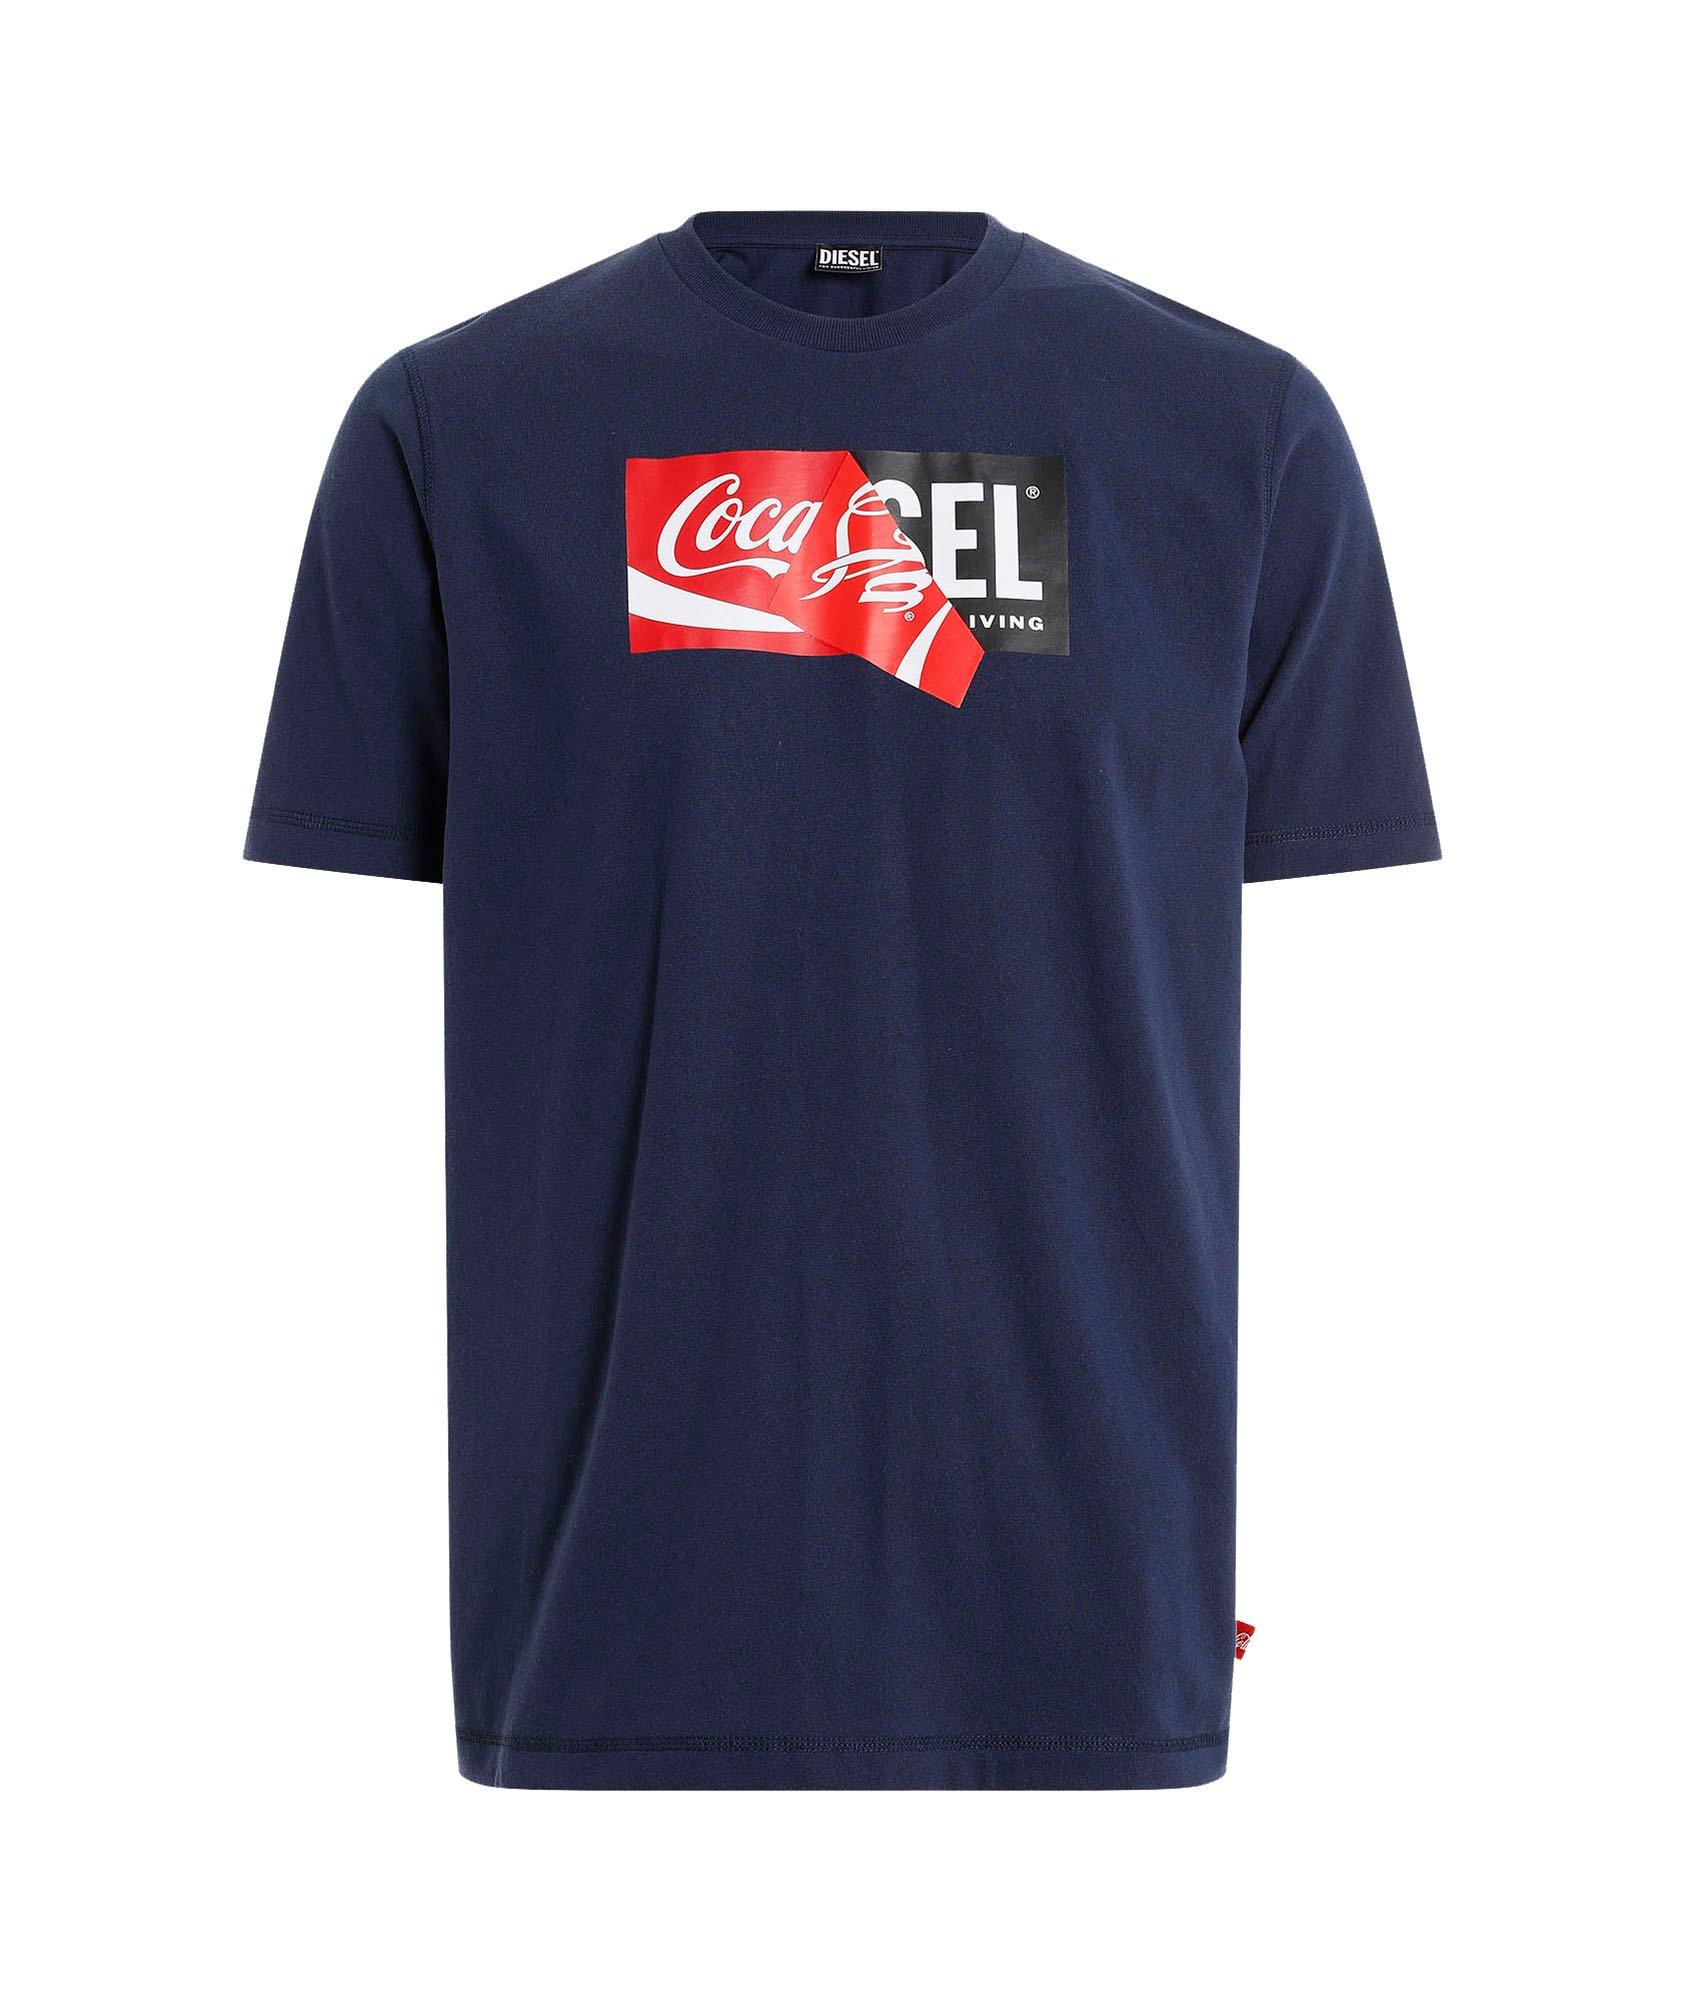 T-shirt de Coca-Cola en mélange de coton image 0